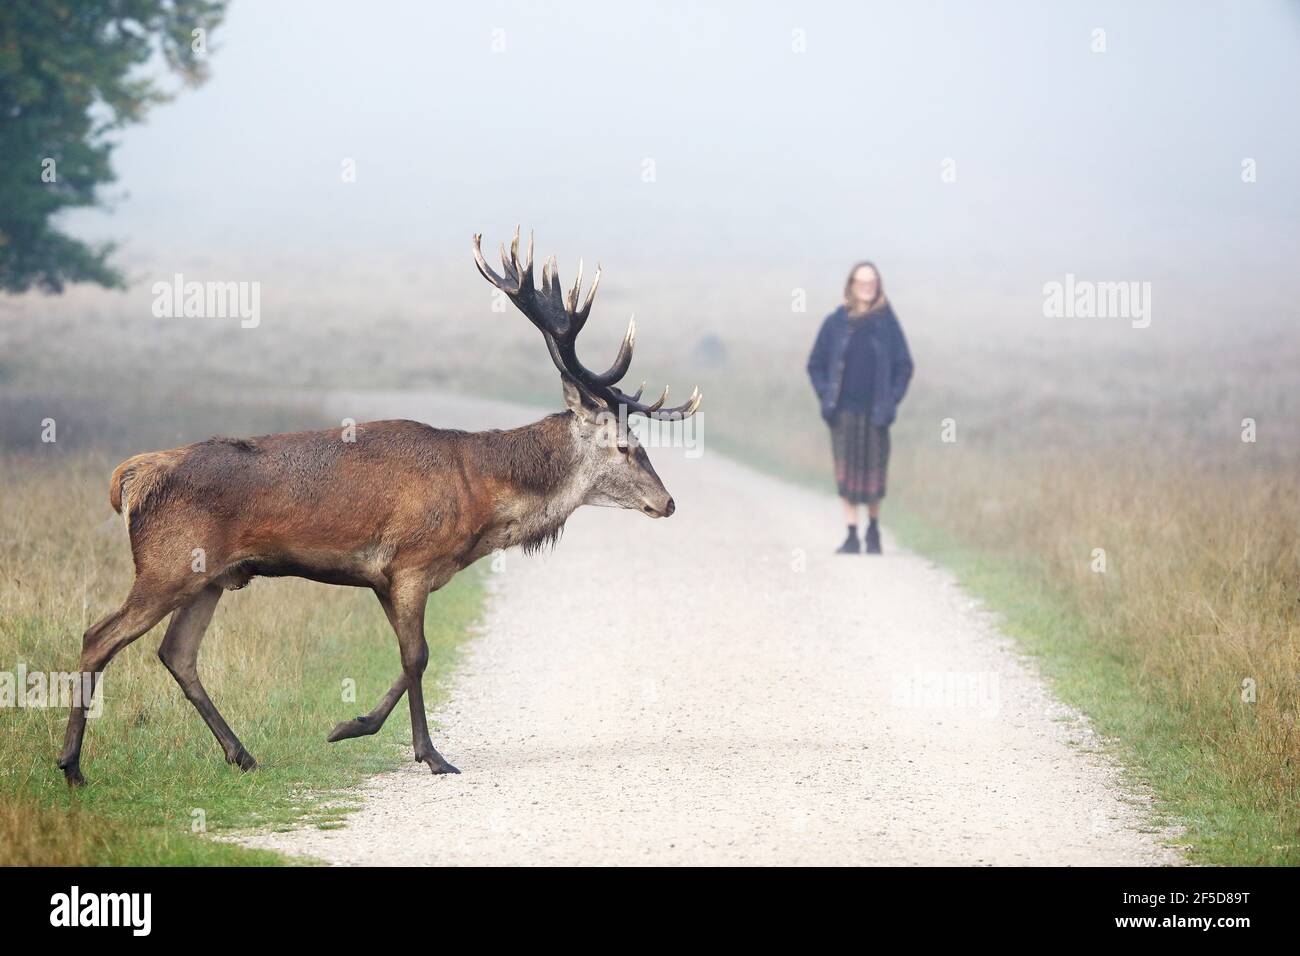 Cervi rossi (Cervus elaphus), stag che attraversa un sentiero di fronte ad una donna in via di promenimento, la Danimarca Foto Stock